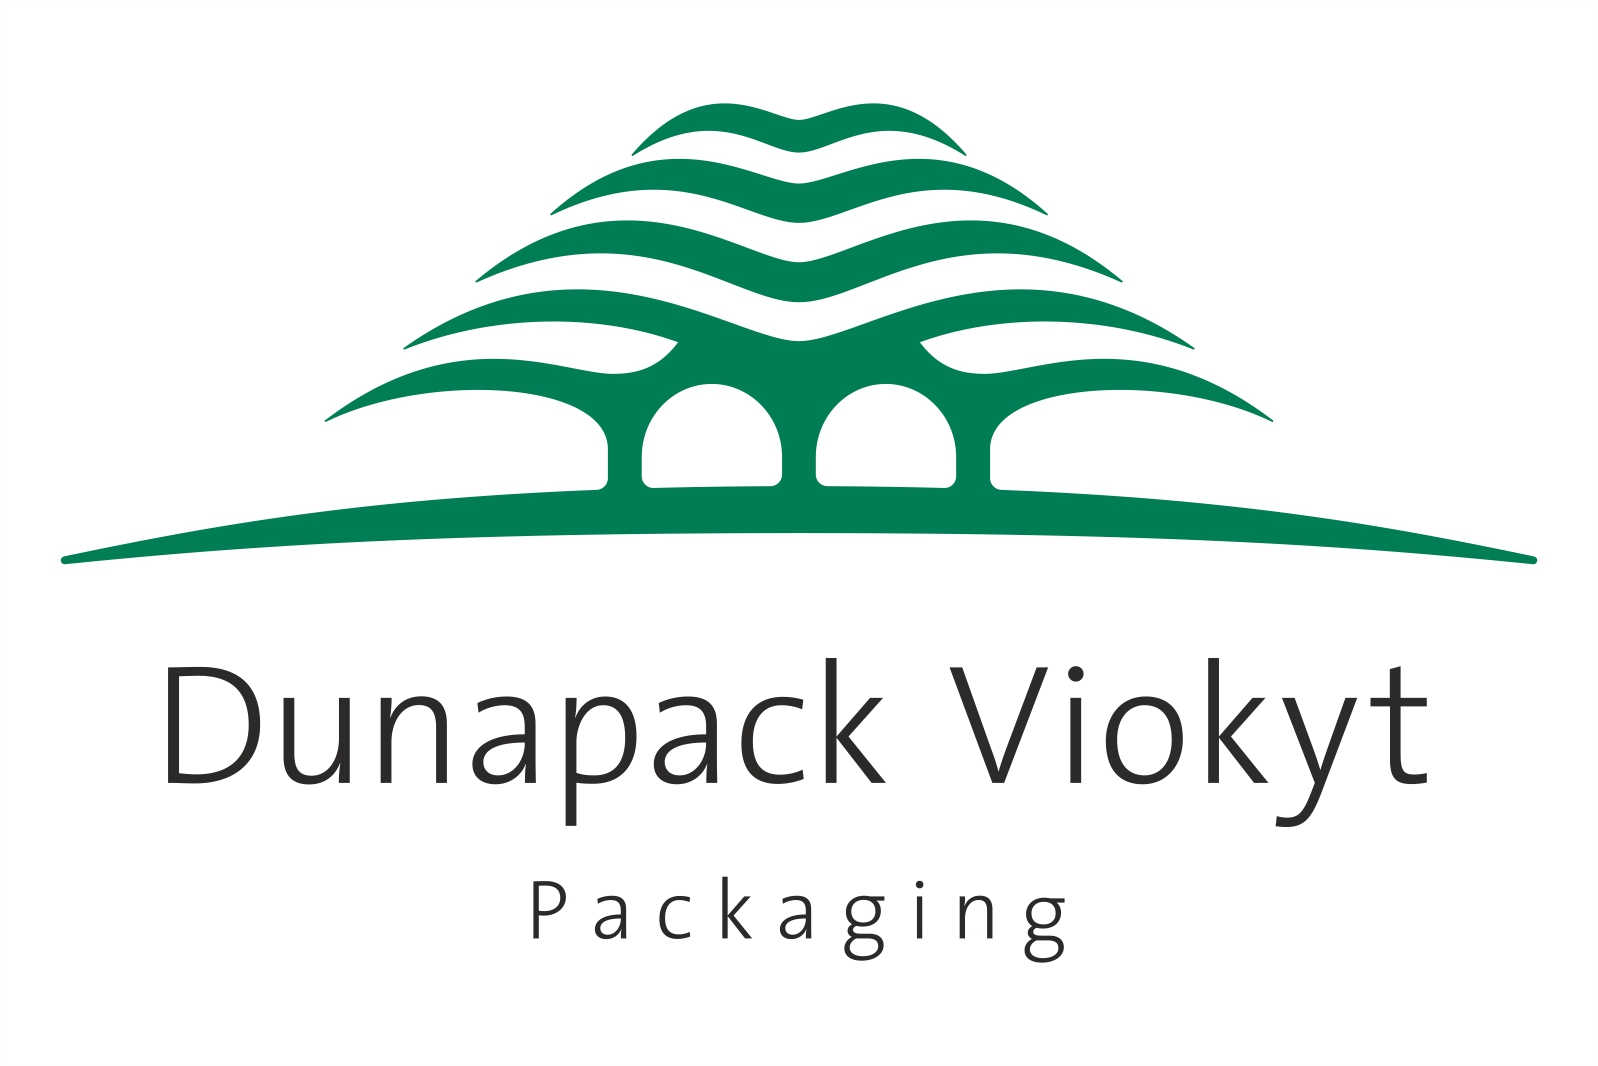 Dunapack Viokyt Packaging